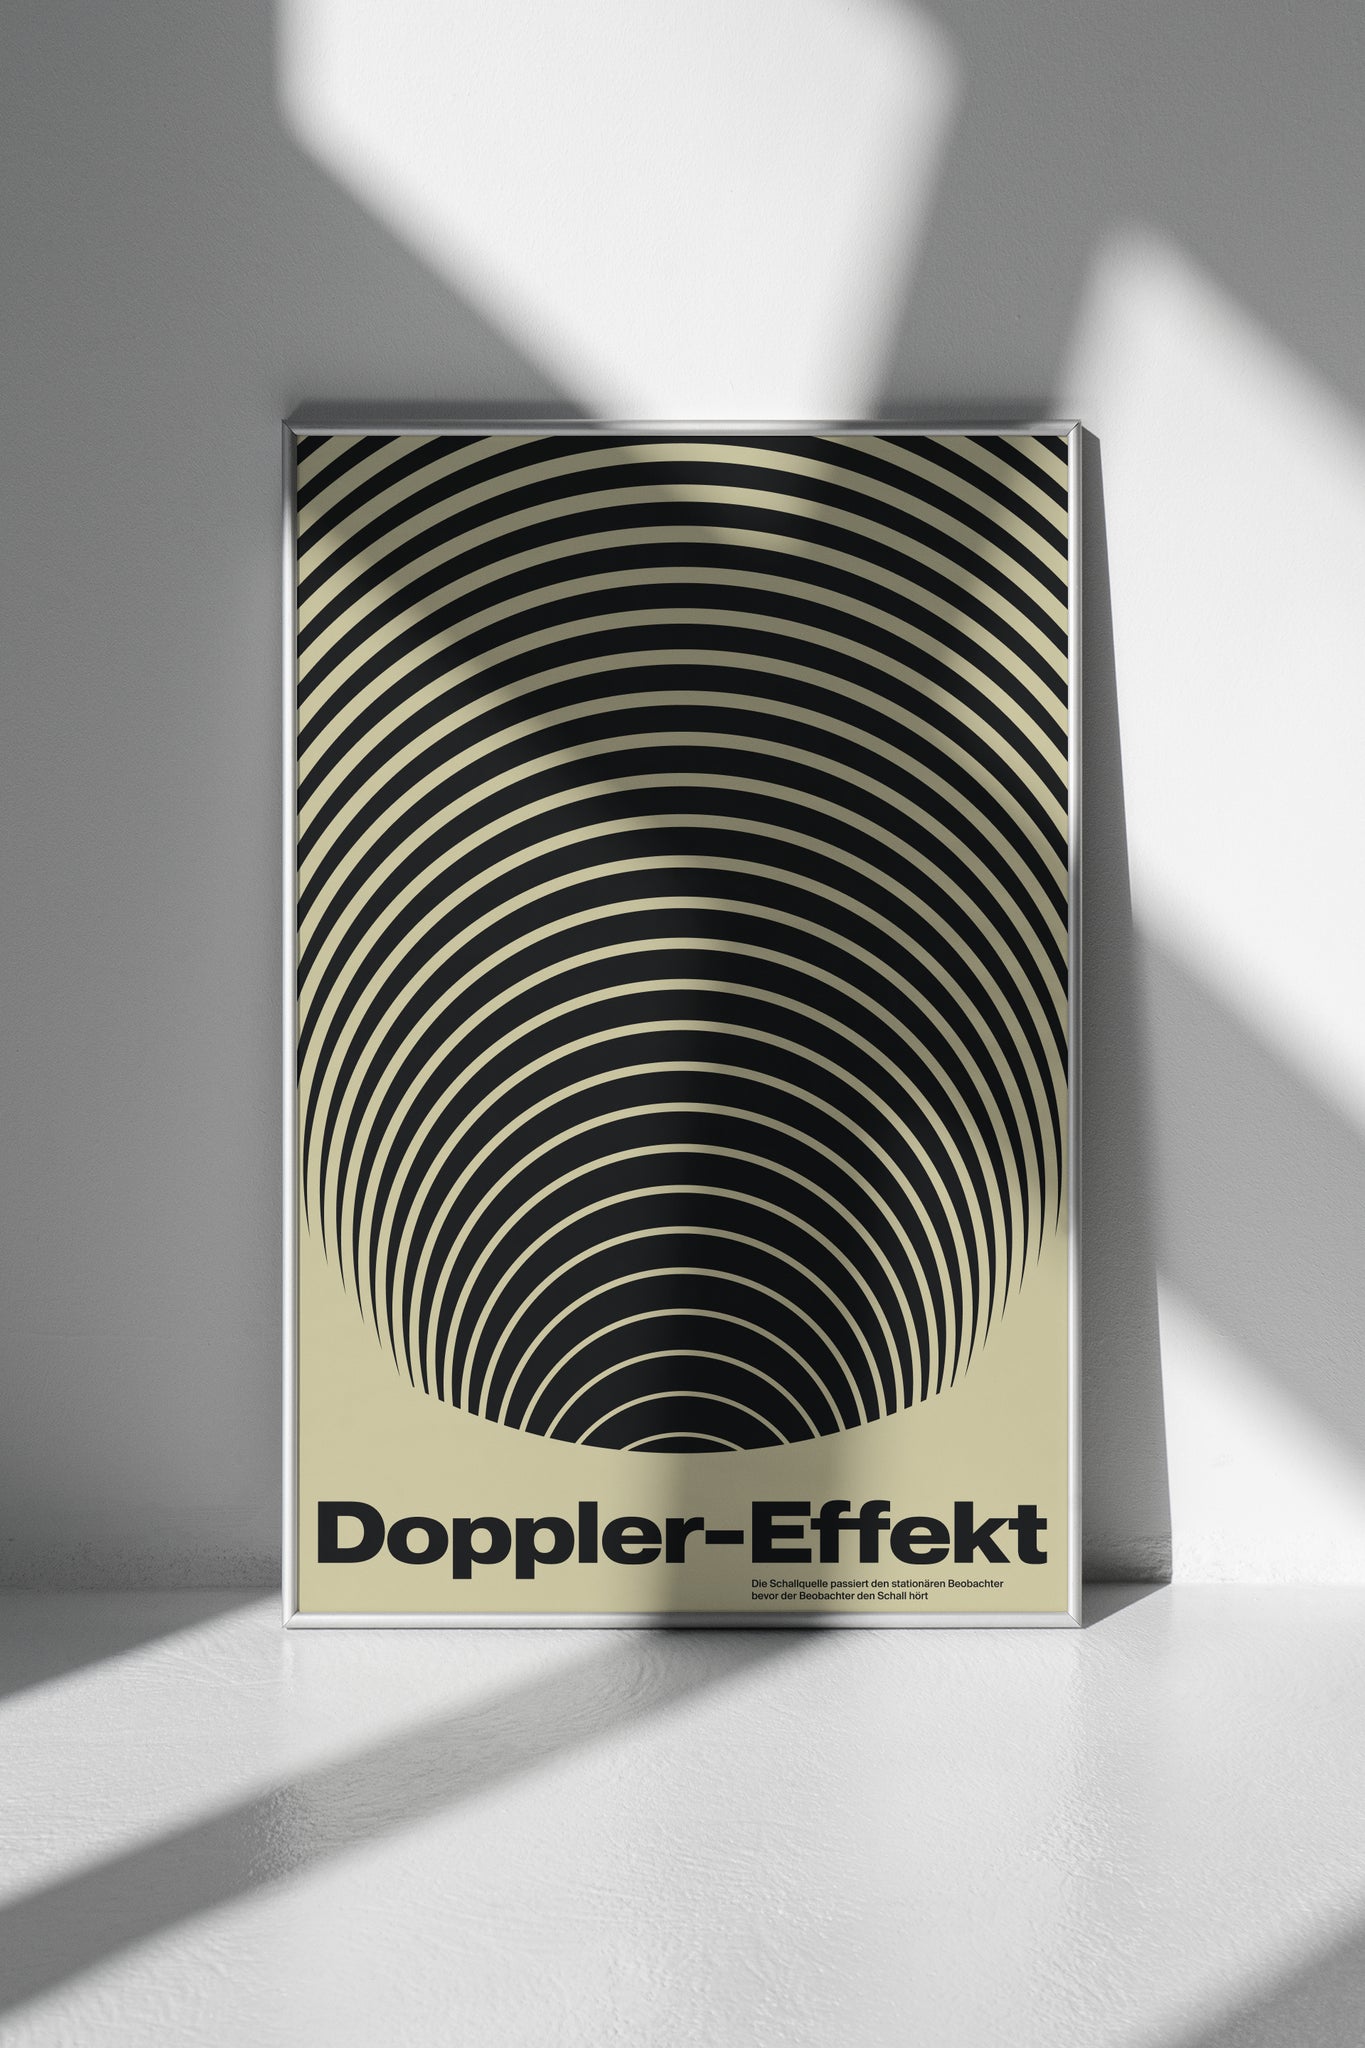 Doppler-Effekt poster by Xtian Miller via SIGNAL A